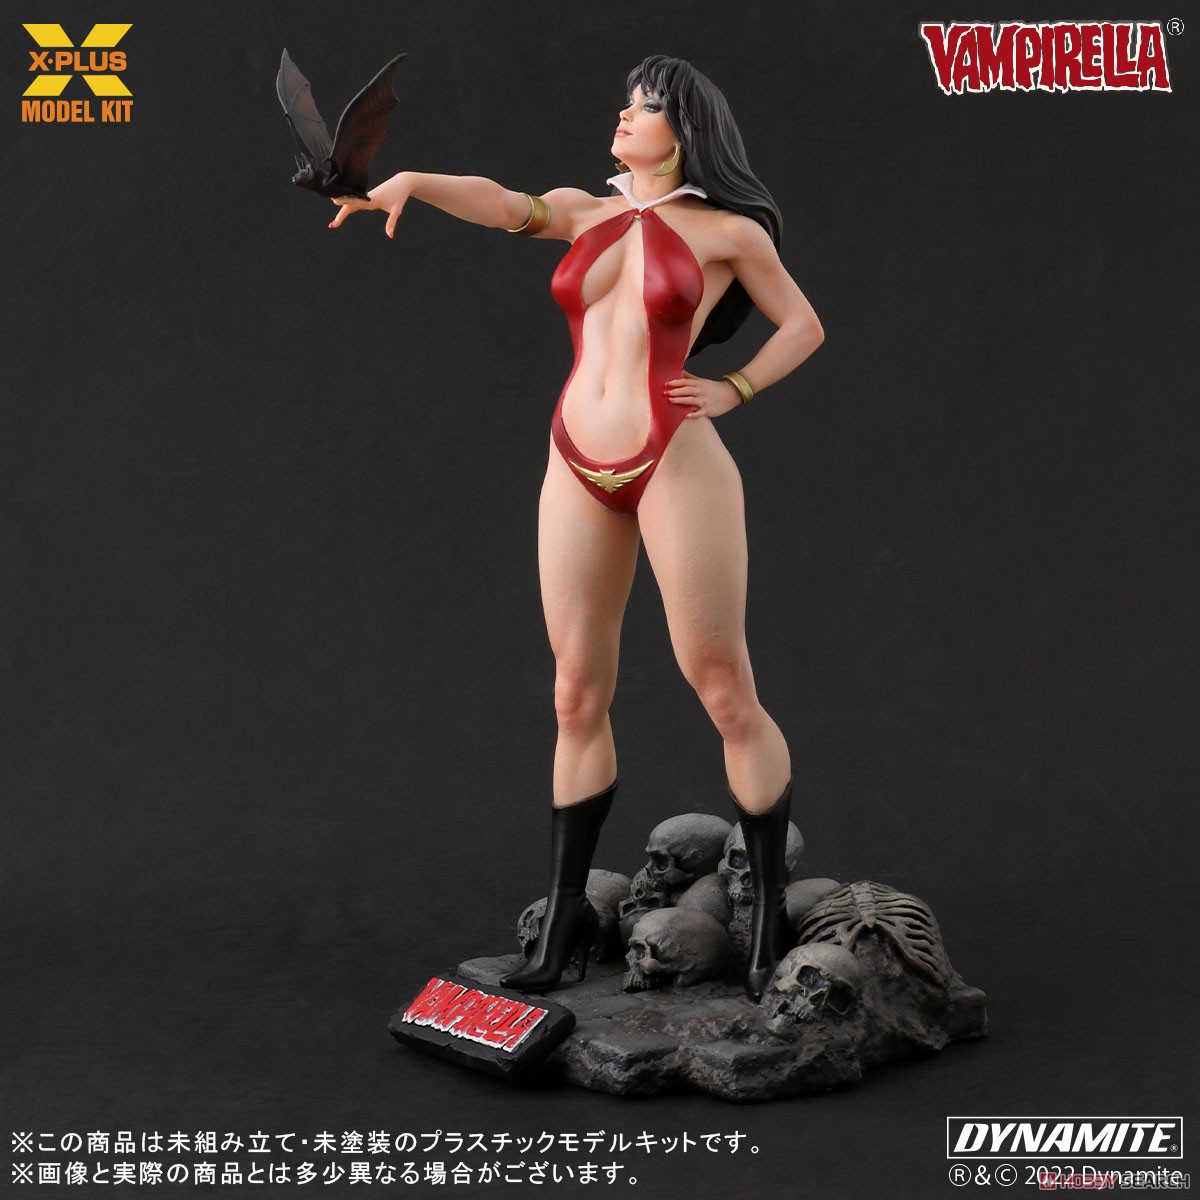 Vampirella『ヴァンピレラ ホセ・ゴンザレス エディション 』1/8スケール プラスチック モデルキット-005